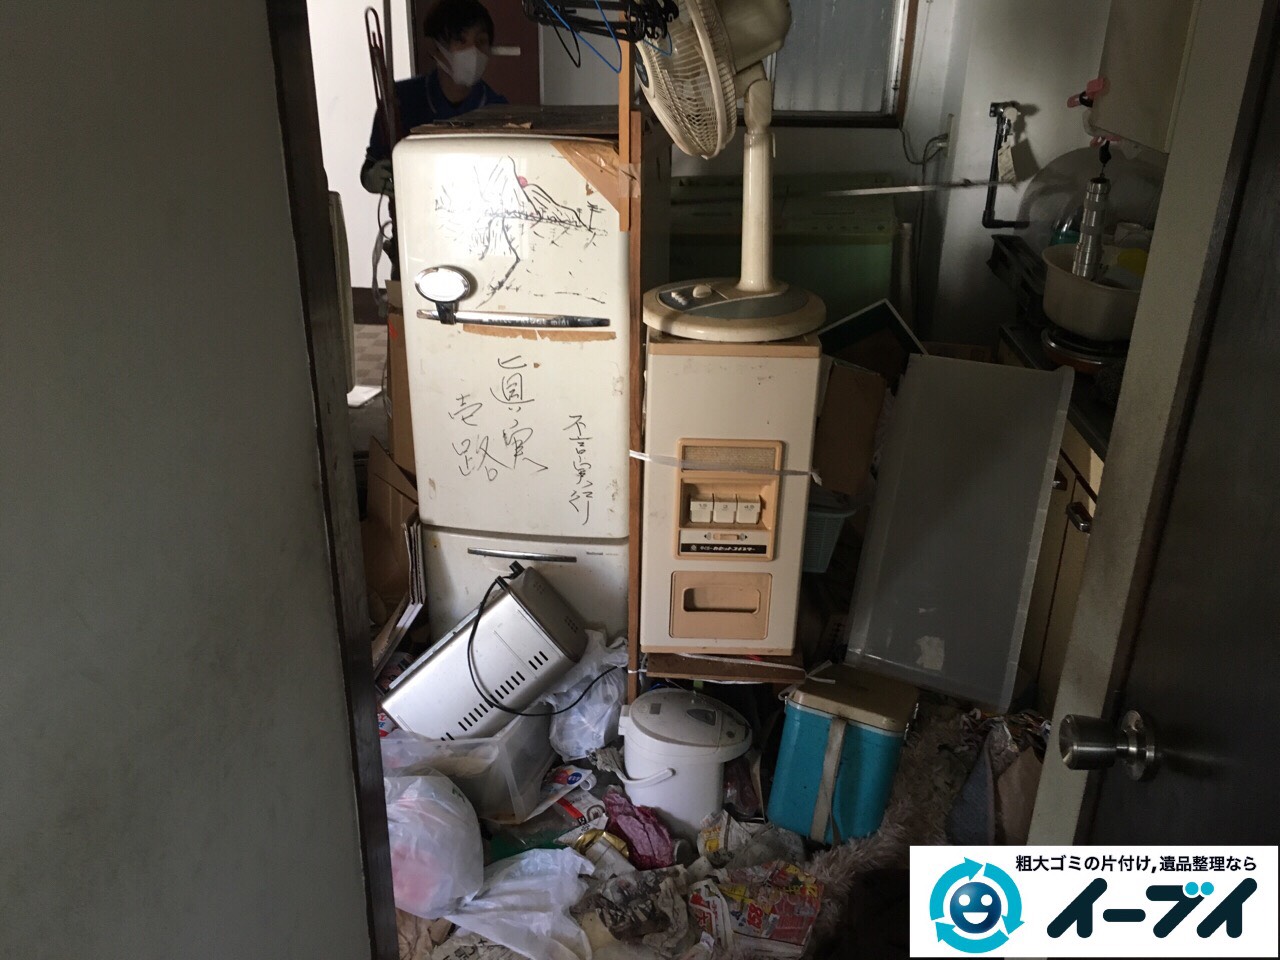 2017年2月18日大阪府摂津市で汚部屋状態になっているゴミ屋敷の片付けをしました。写6